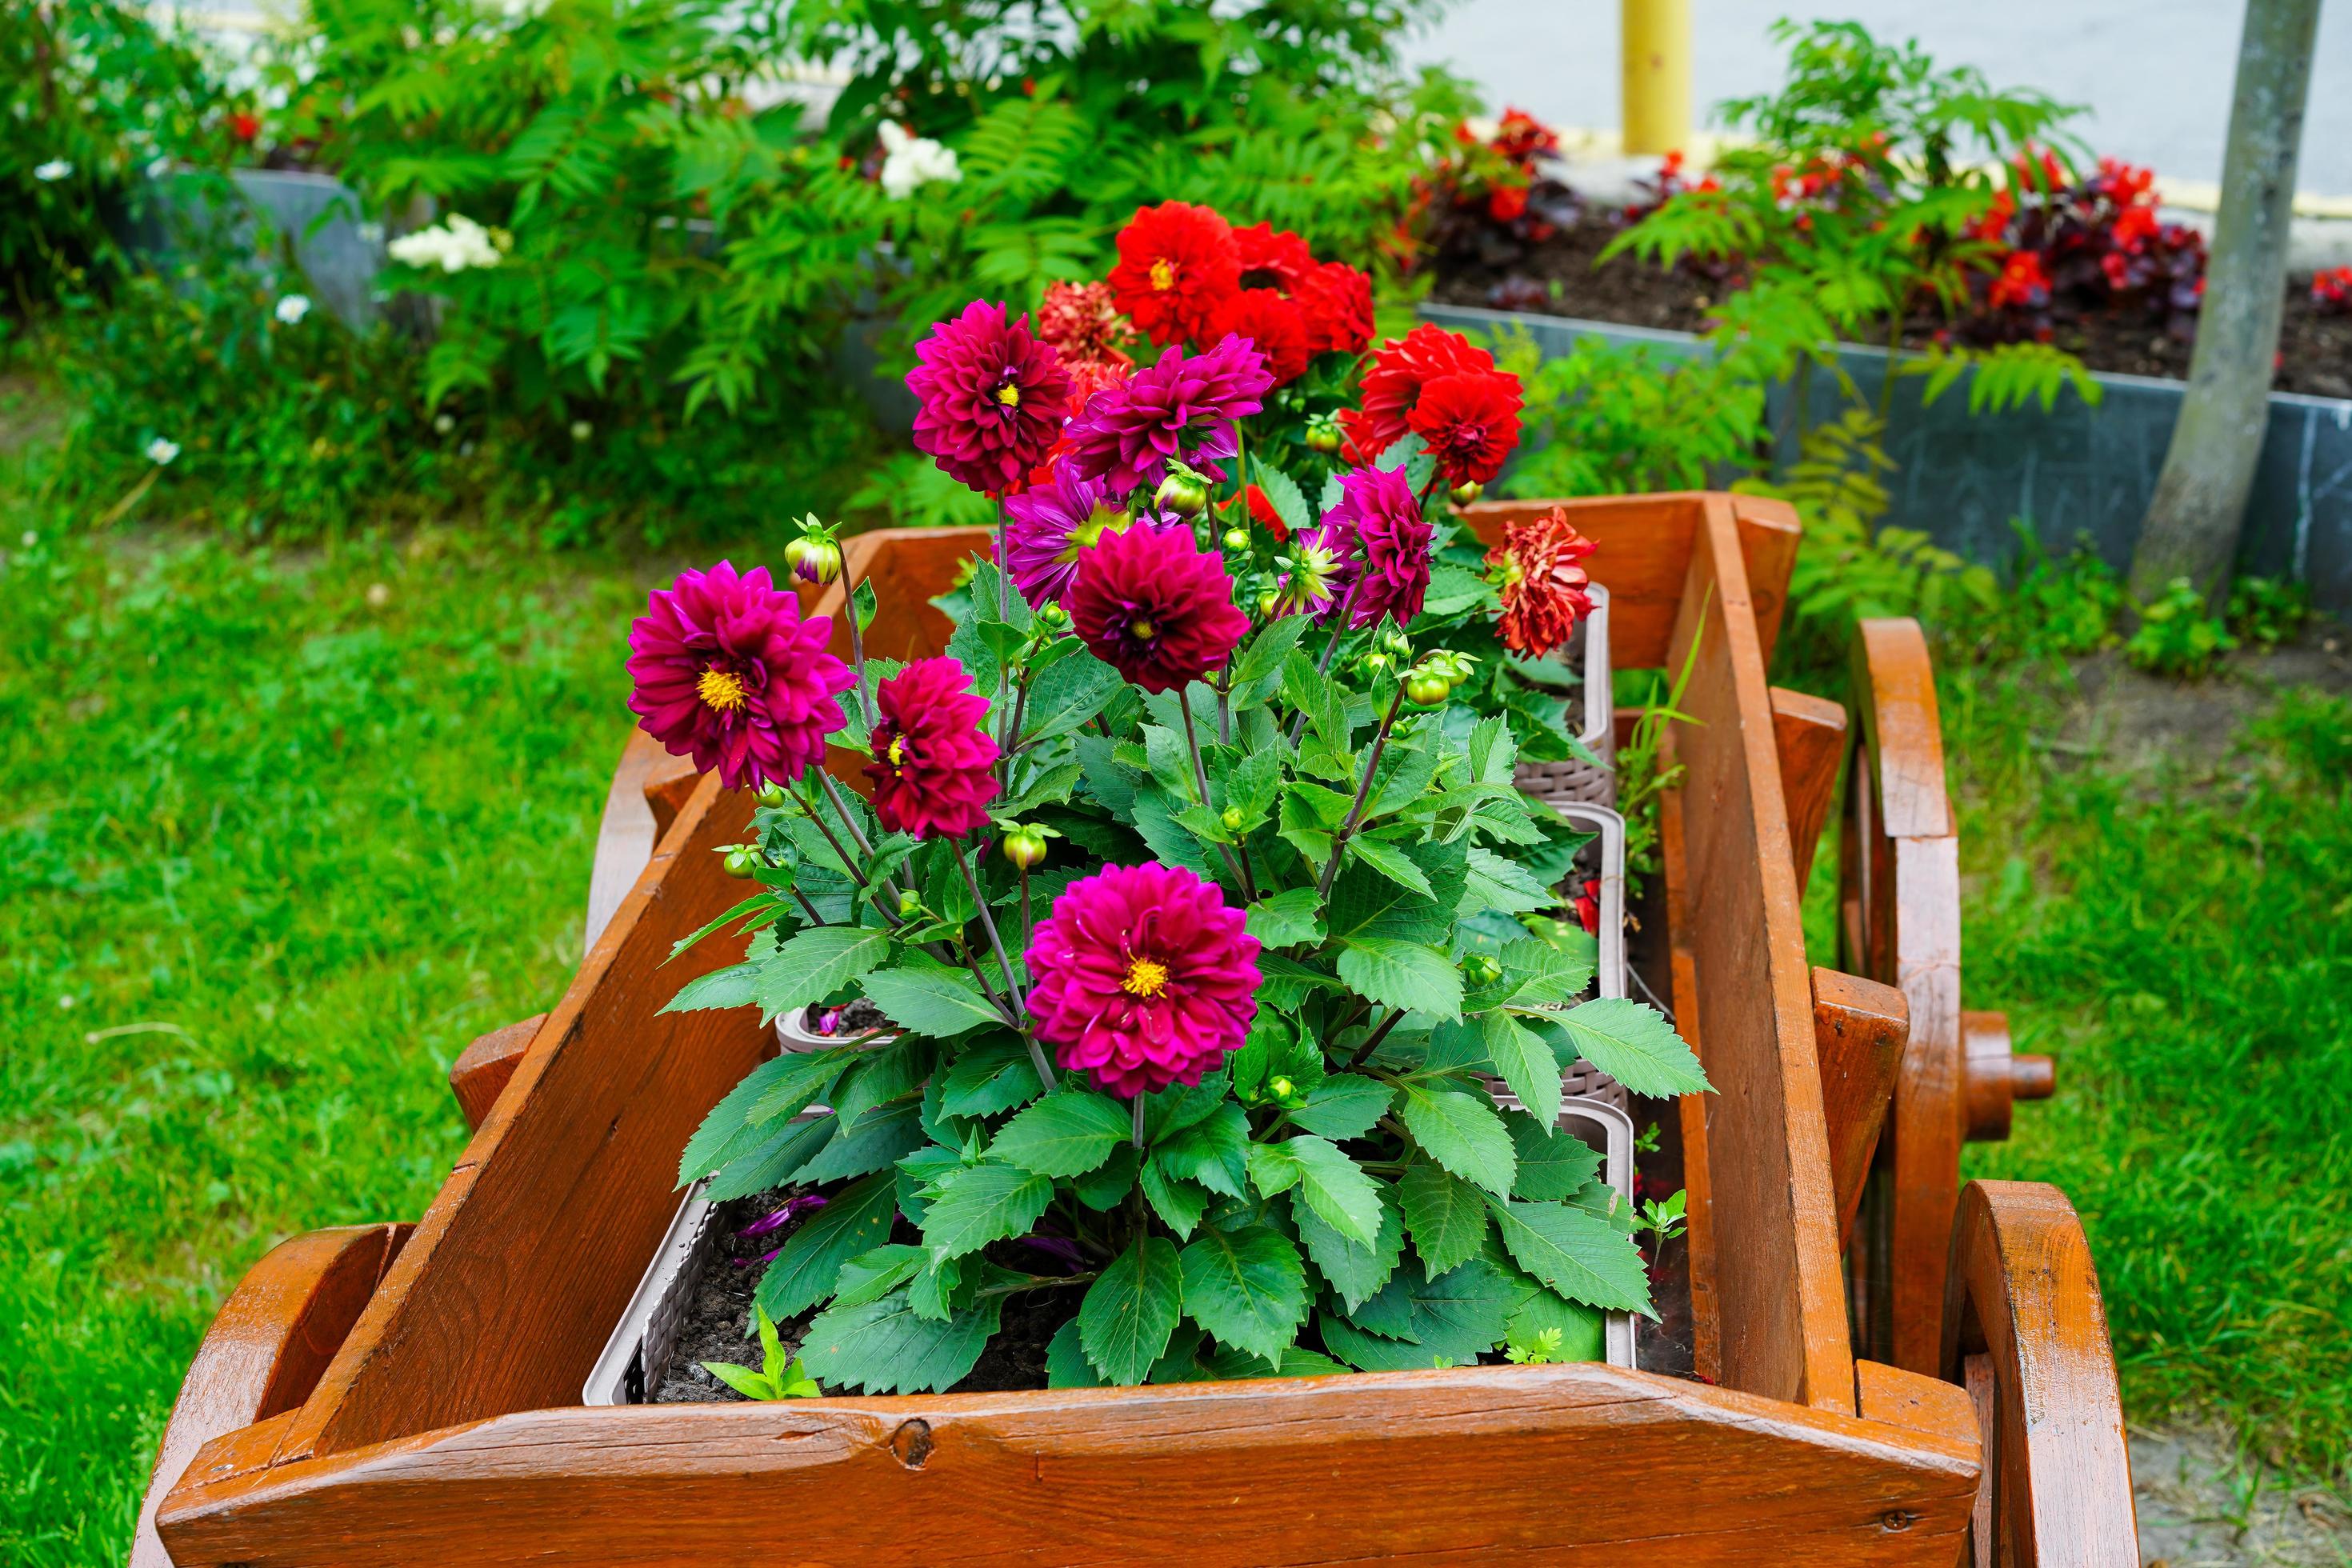 dálias vermelhas em um canteiro de flores em um jardim 2296300 Foto de  stock no Vecteezy